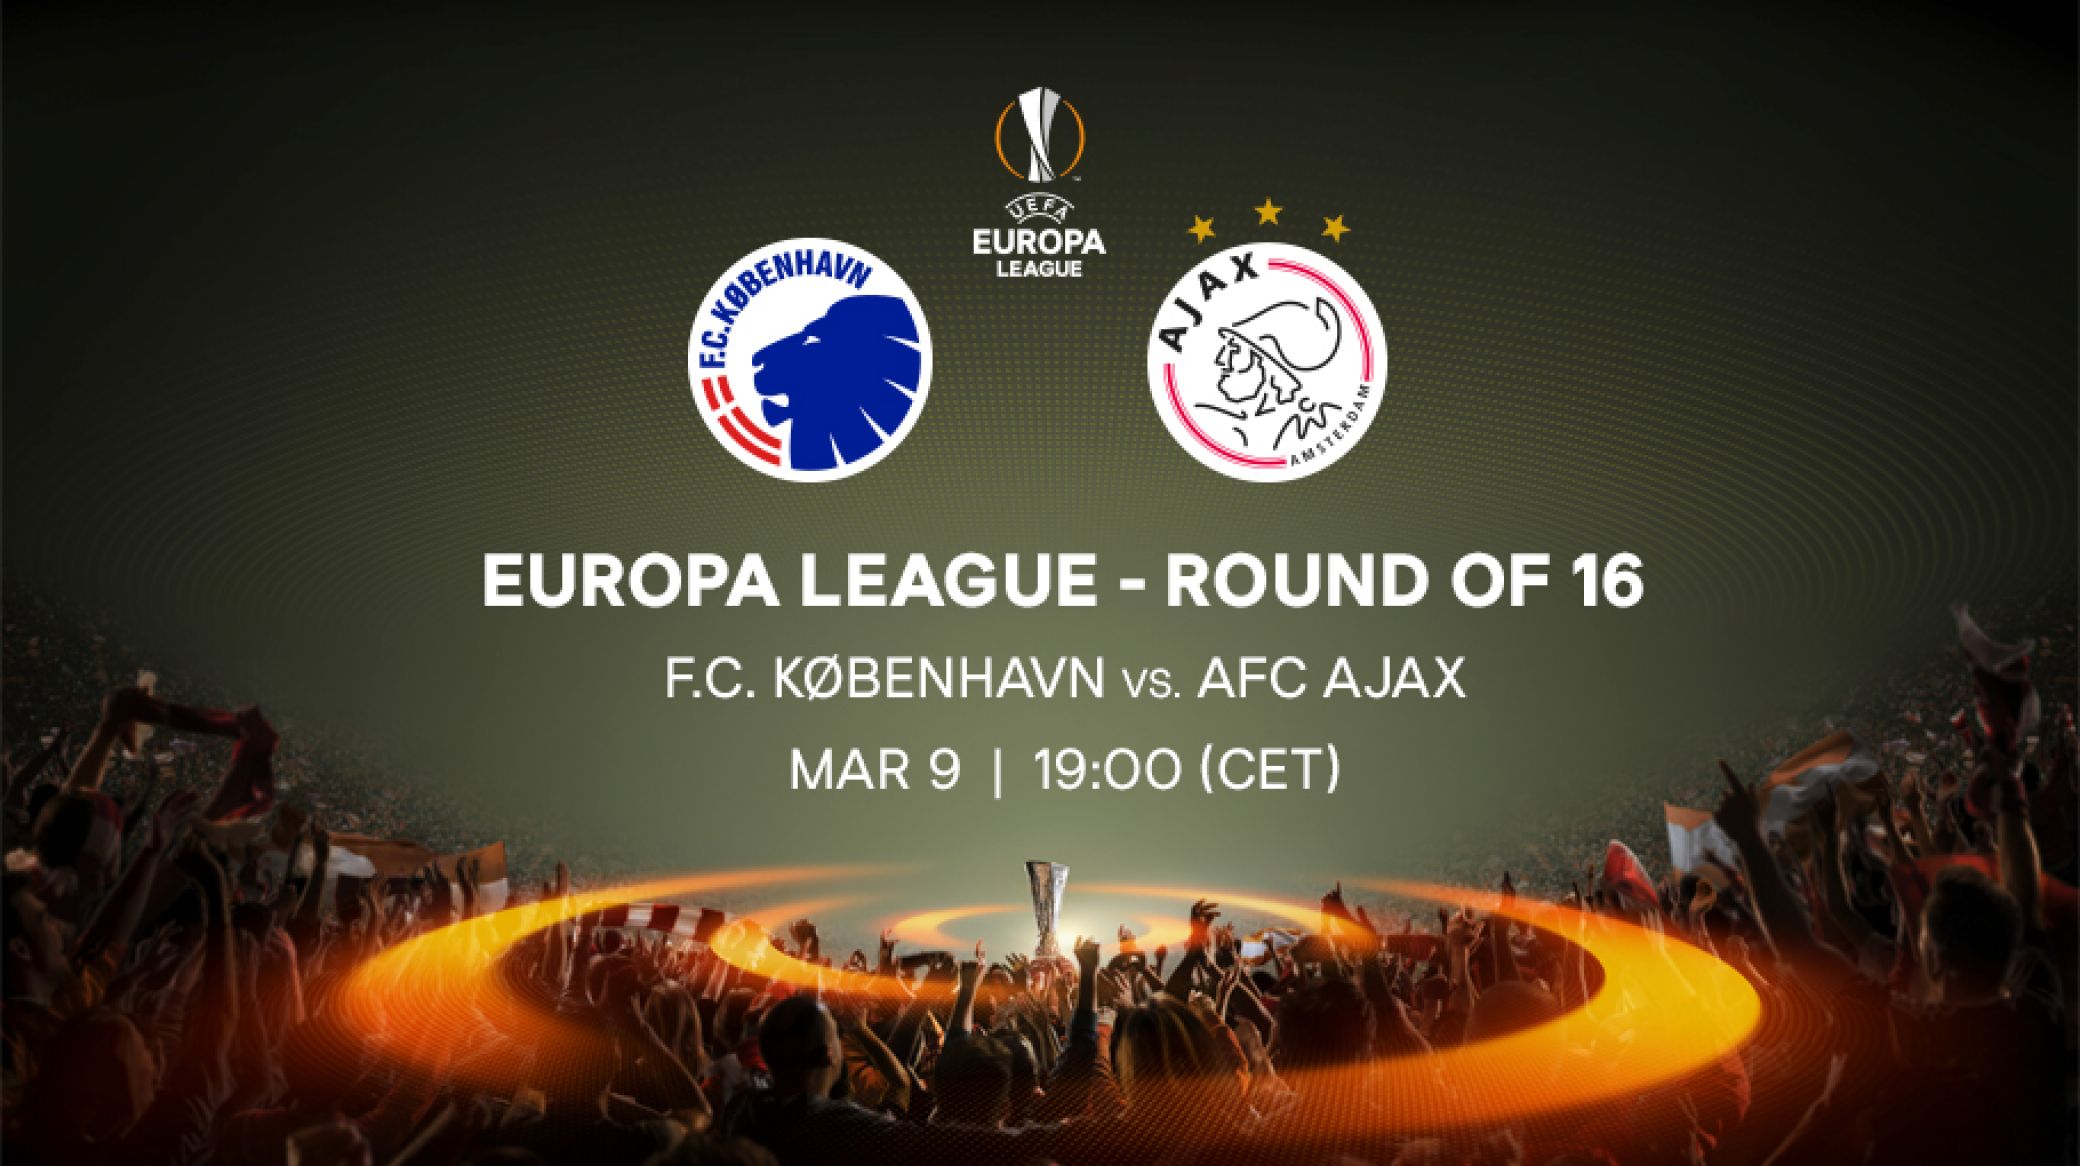 Ticket information FCK-AFC Ajax